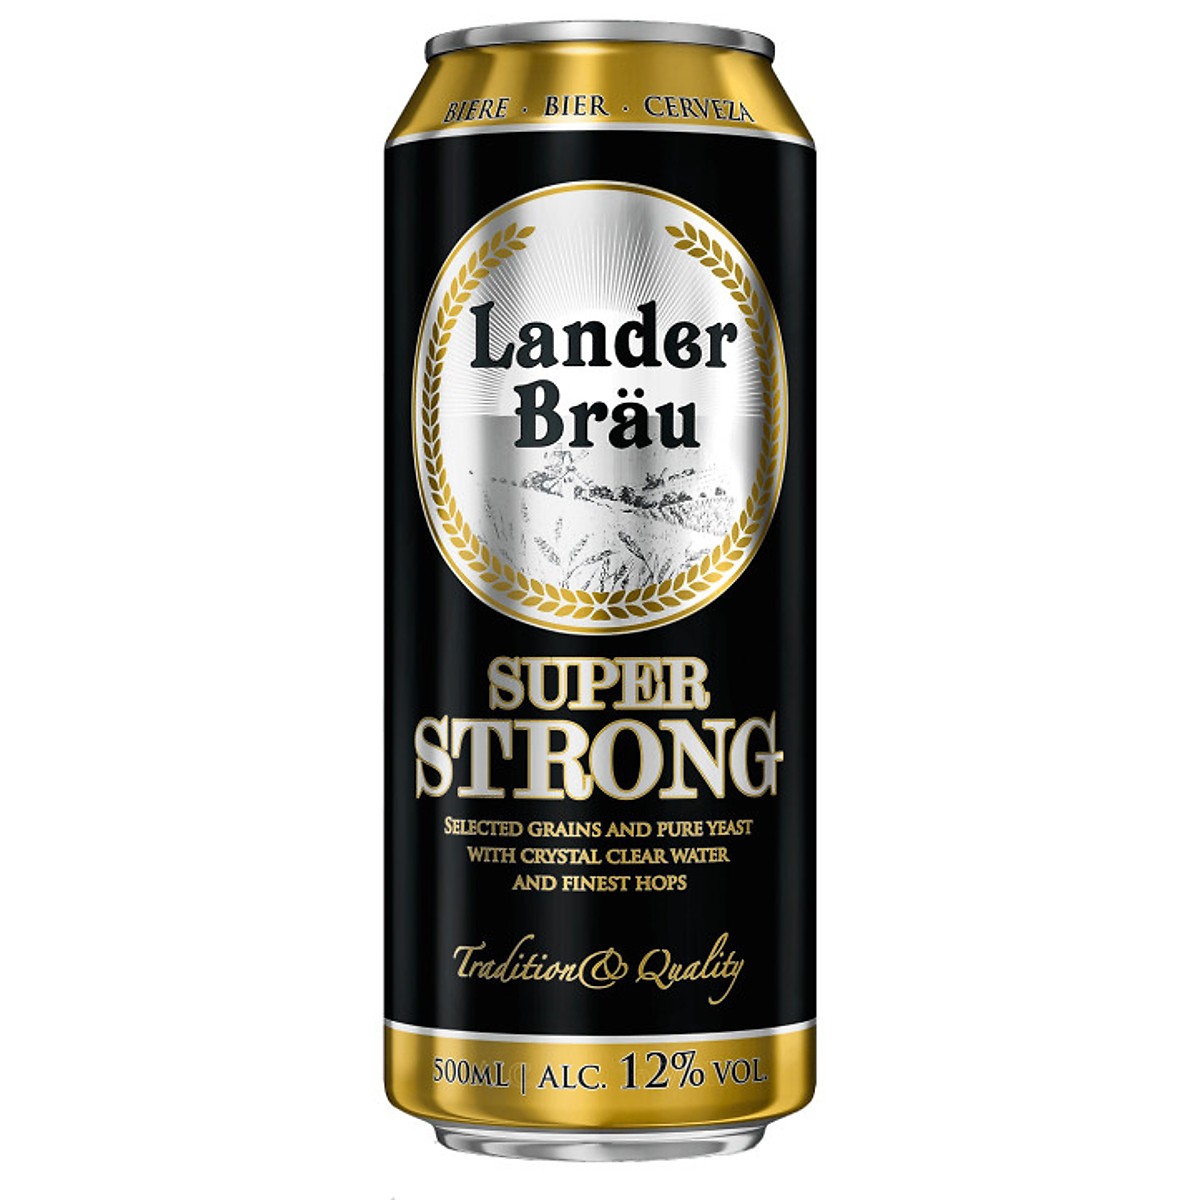 Bia Lander Brau Super Strong 12% Hà Lan-lon 500ml